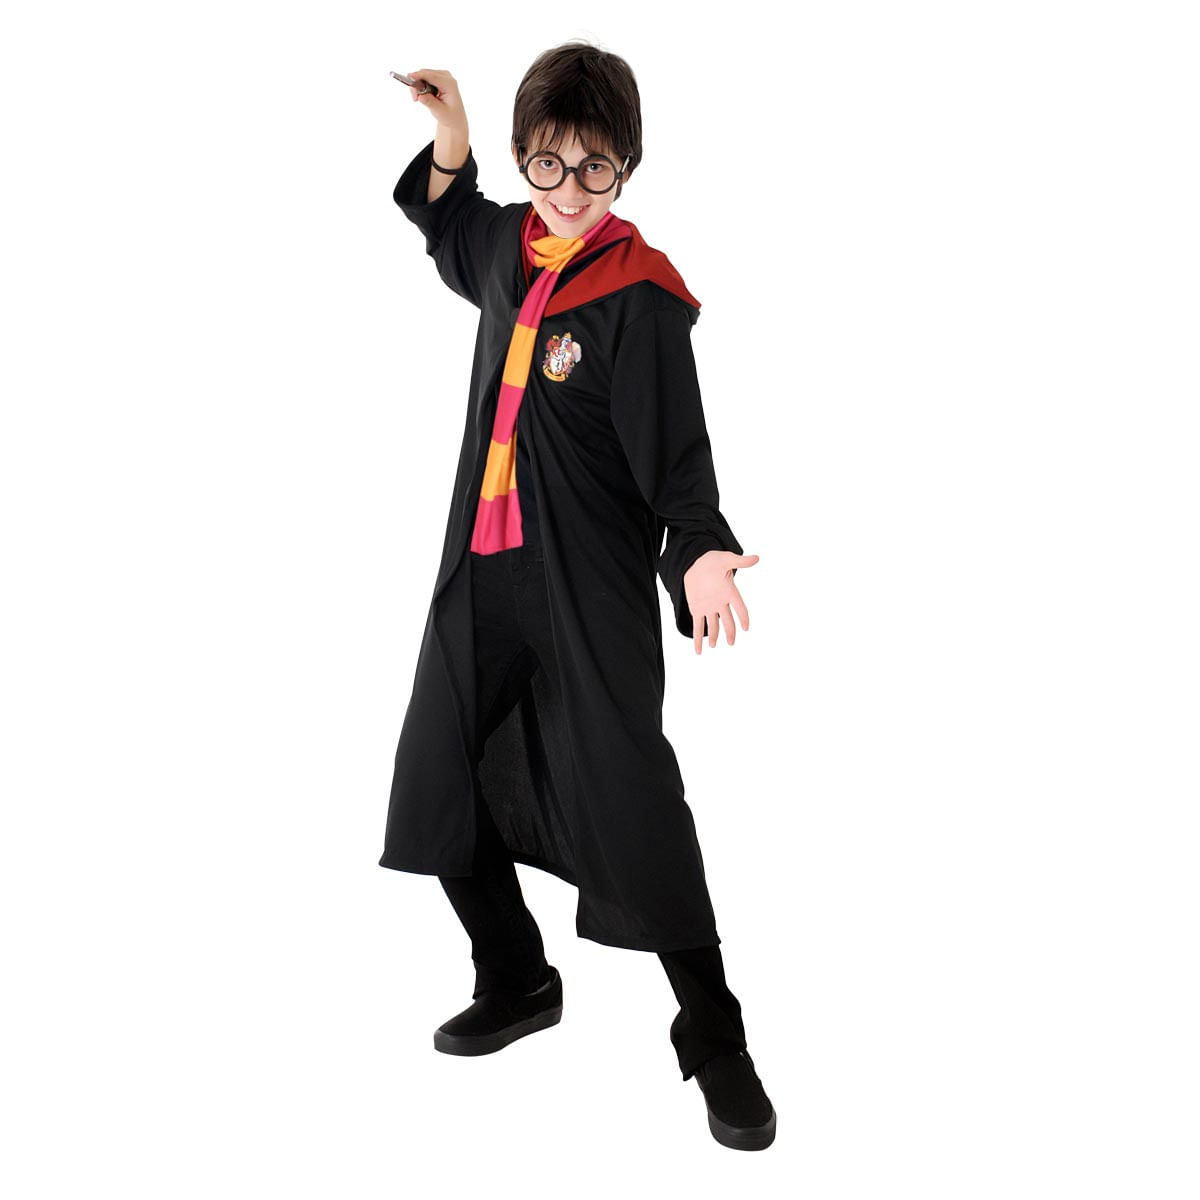 Fantasia Harry Potter Infantil Grifinória Original com Cachecol e Óculos - Harry Potter P / UNICA